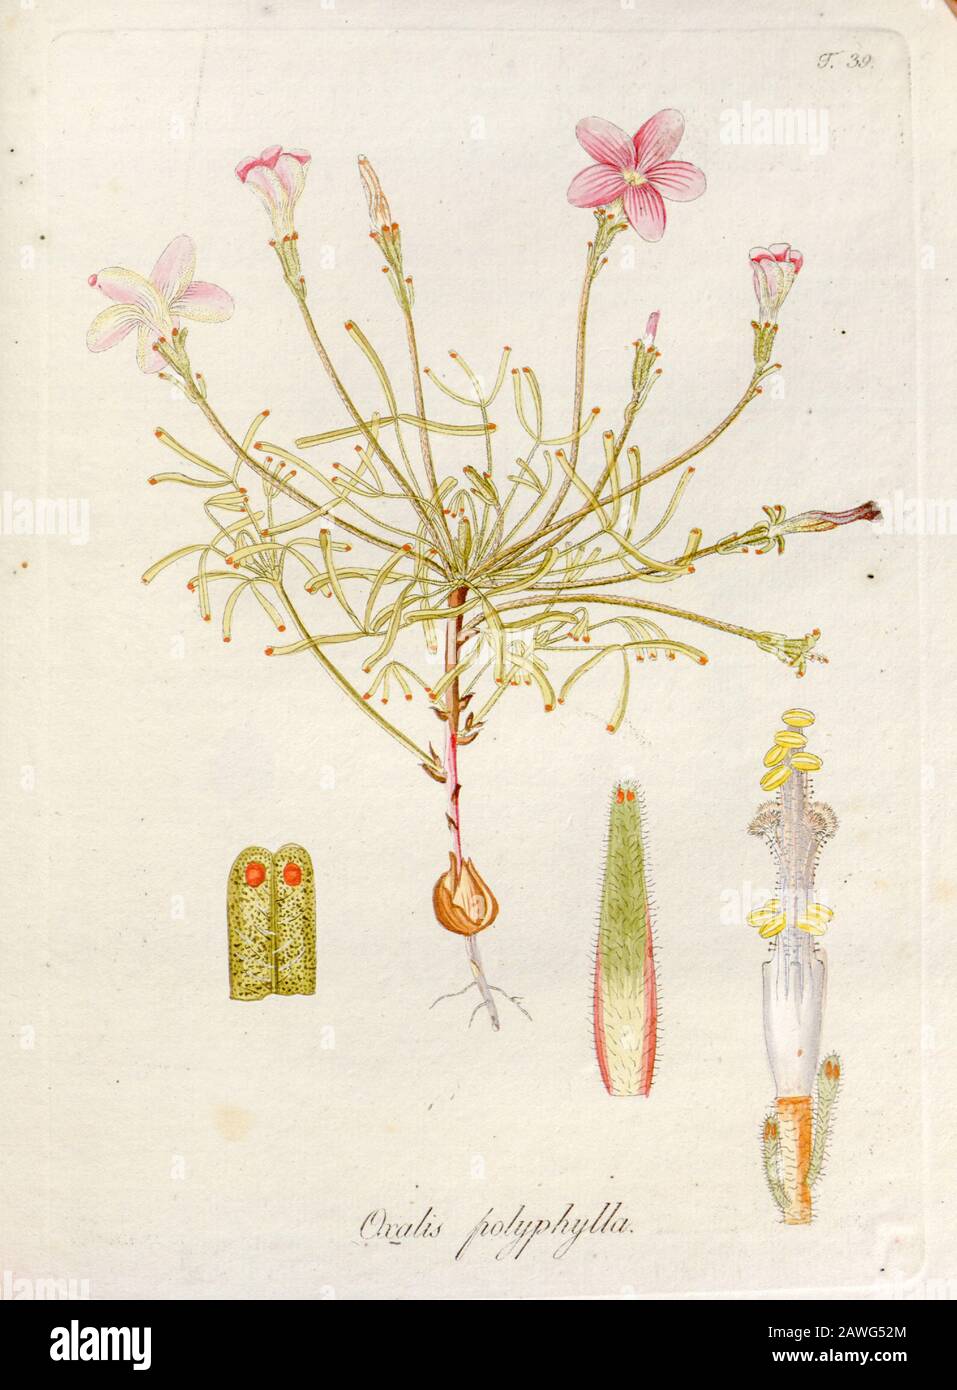 Woodsorrel (Oxalis polyphylla). Illustration from 'Oxalis Monographia iconibus illustrata' by Nikolaus Joseph Jacquin (1797-1798). published 1794 Stock Photo